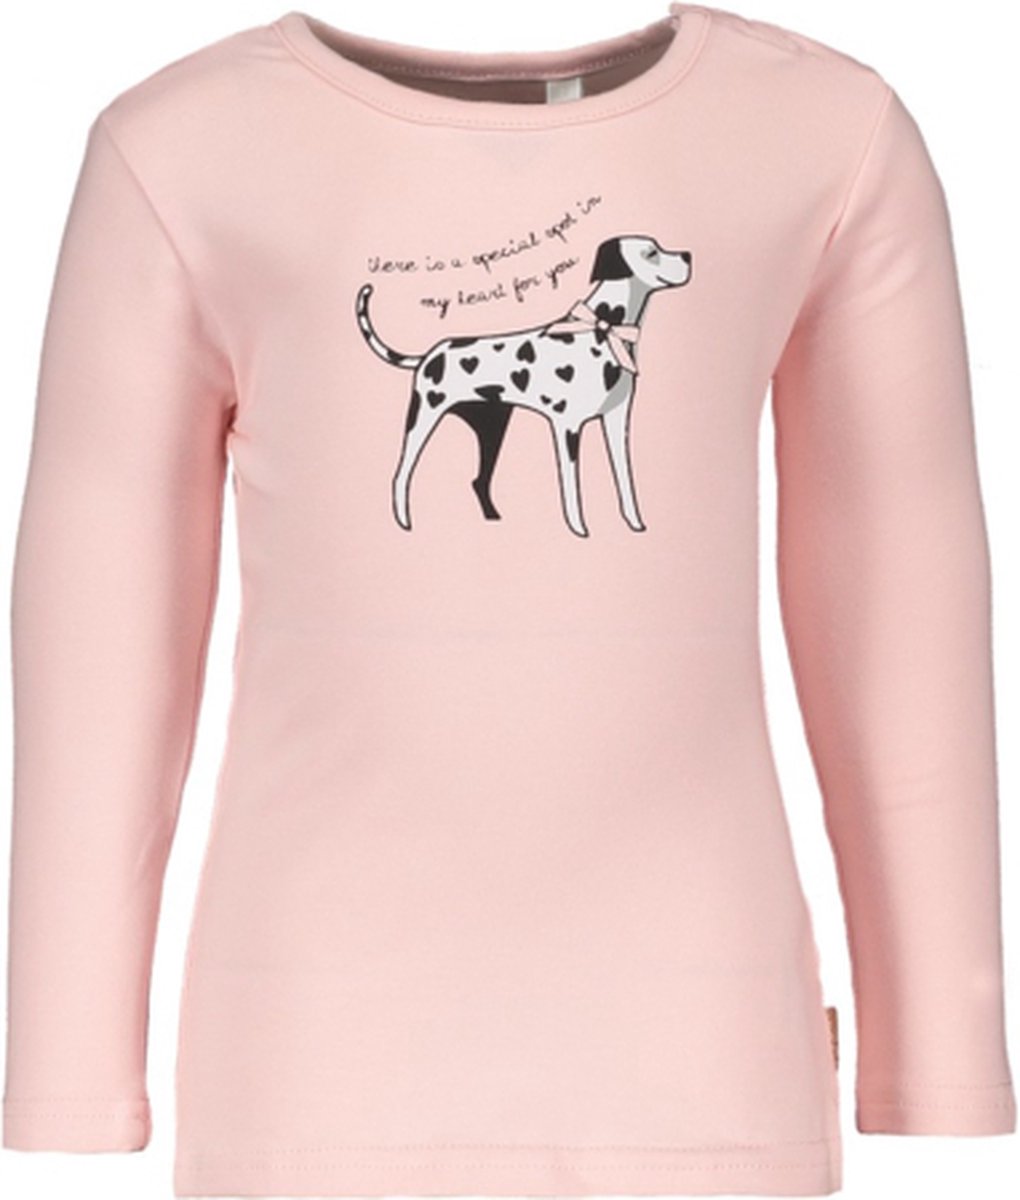 Bampidano - Longsleeve roze met zwart witte hond - Maat 74